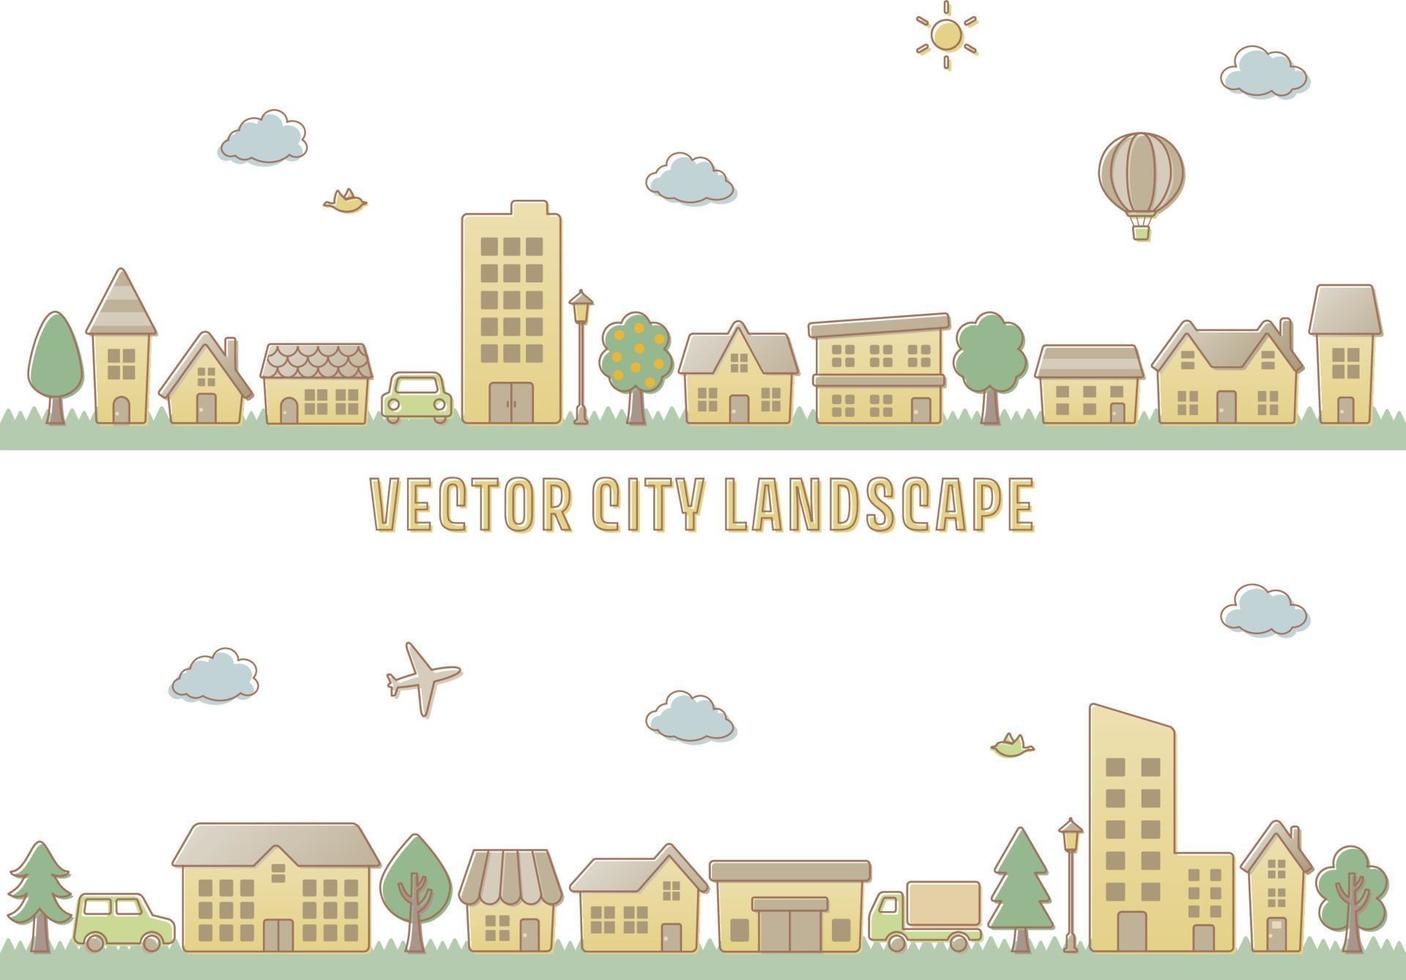 ilustración vectorial de paisaje urbano para el fondo vector